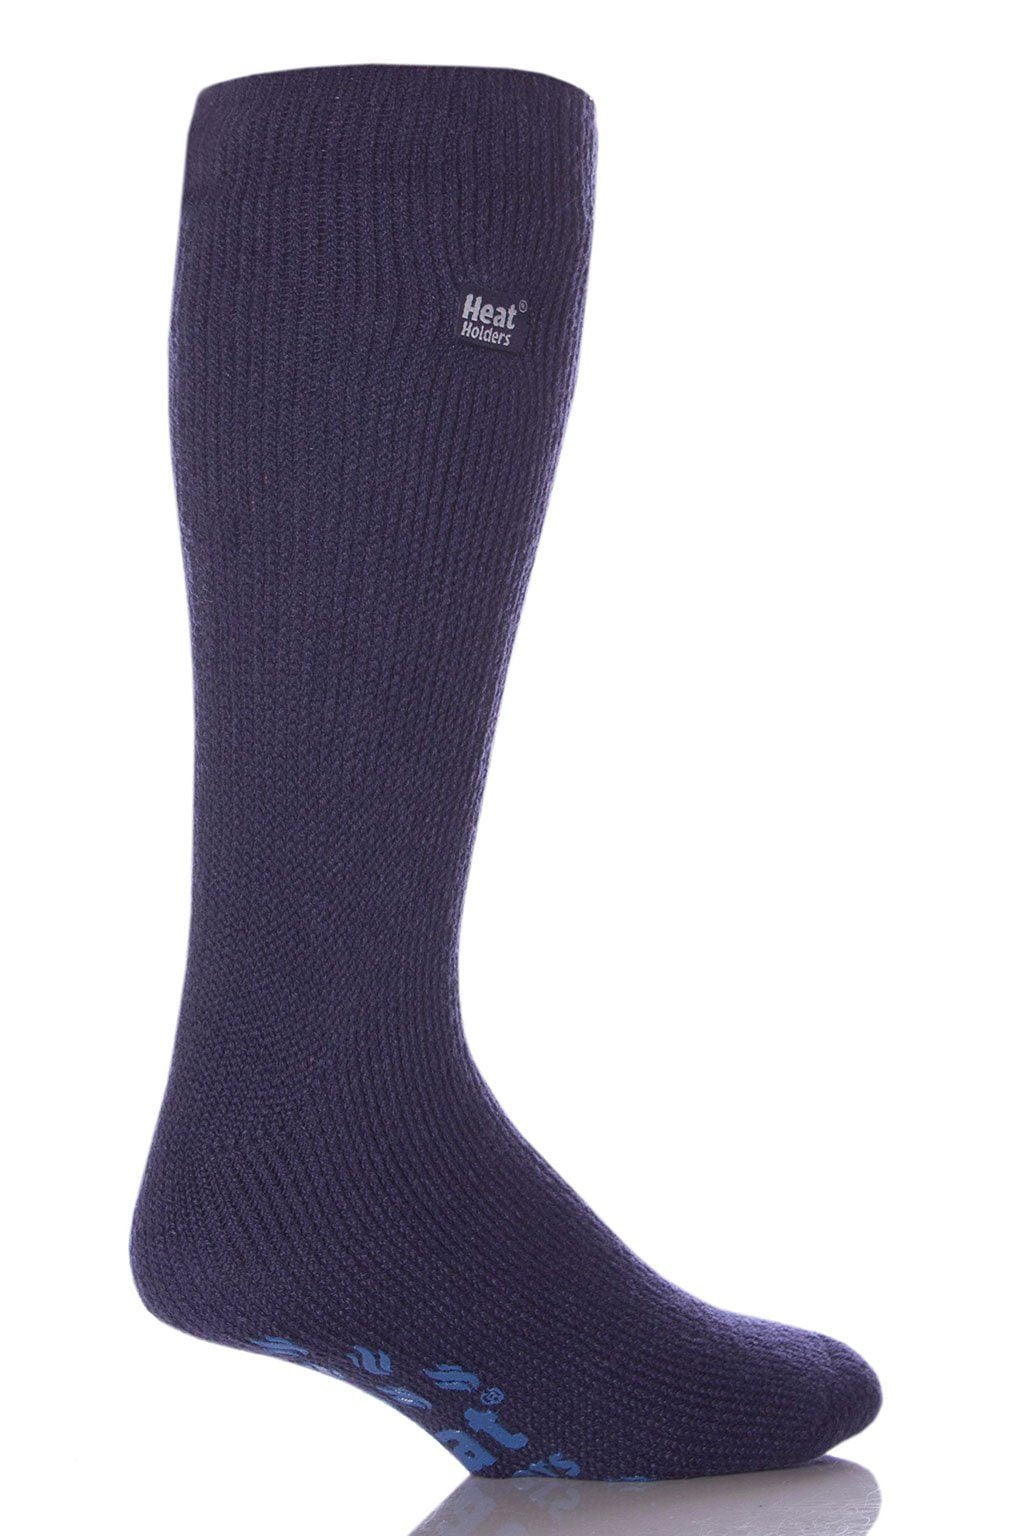 Men's Big/Tall Slipper Socks